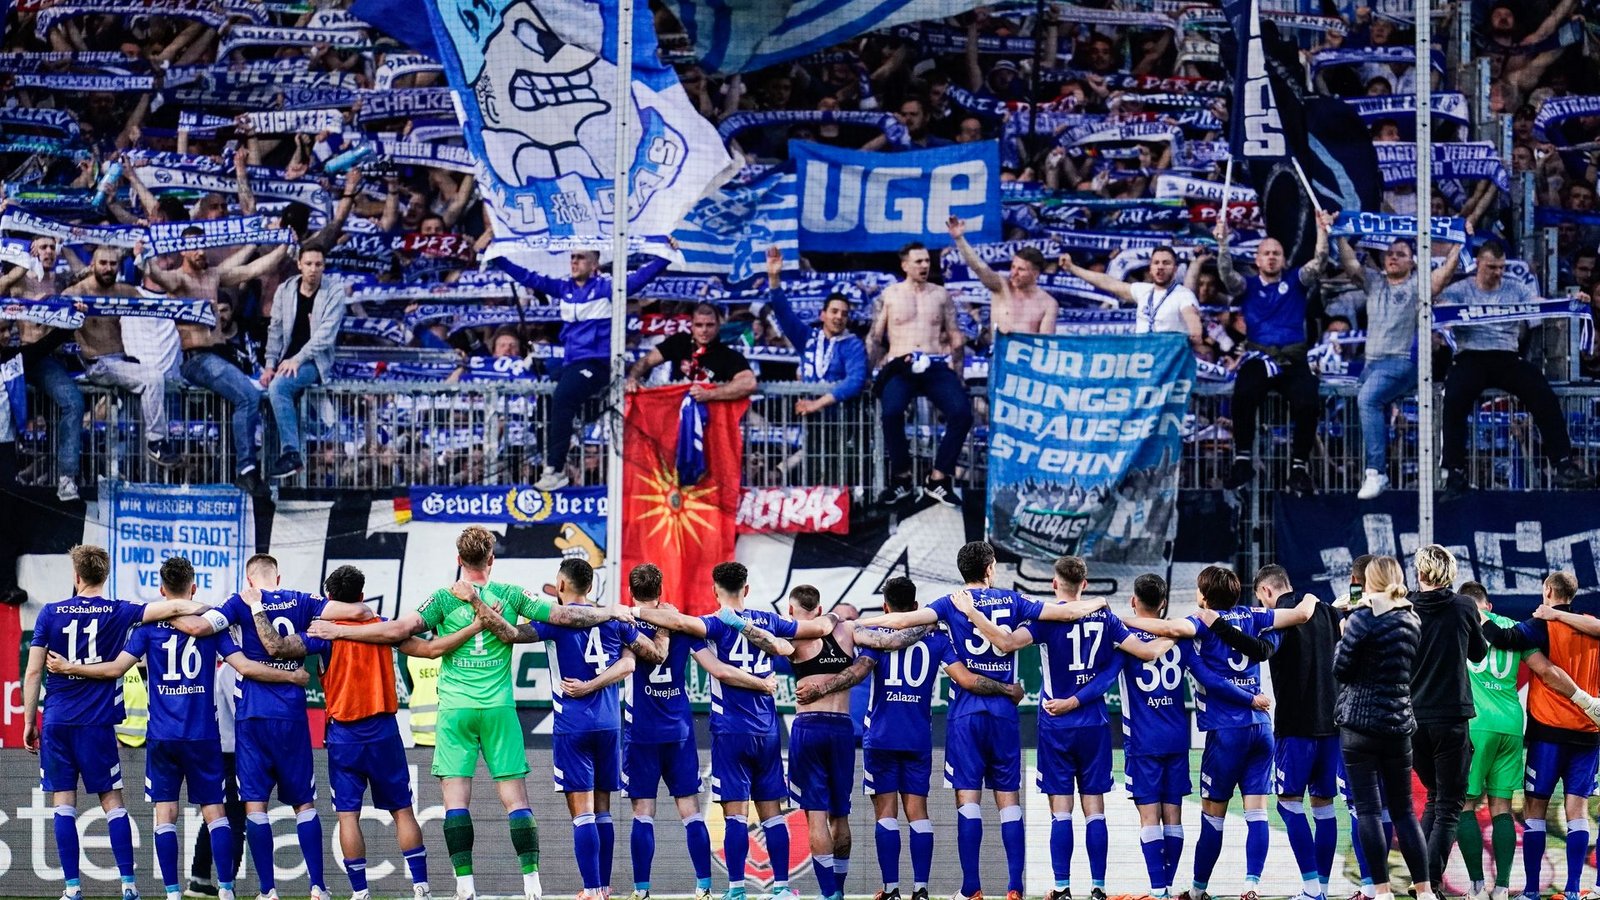 Der FC Schalke 04 hat die besten Chancen in die Bundesliga aufzusteigen.Foto: Uwe Anspach/dpa